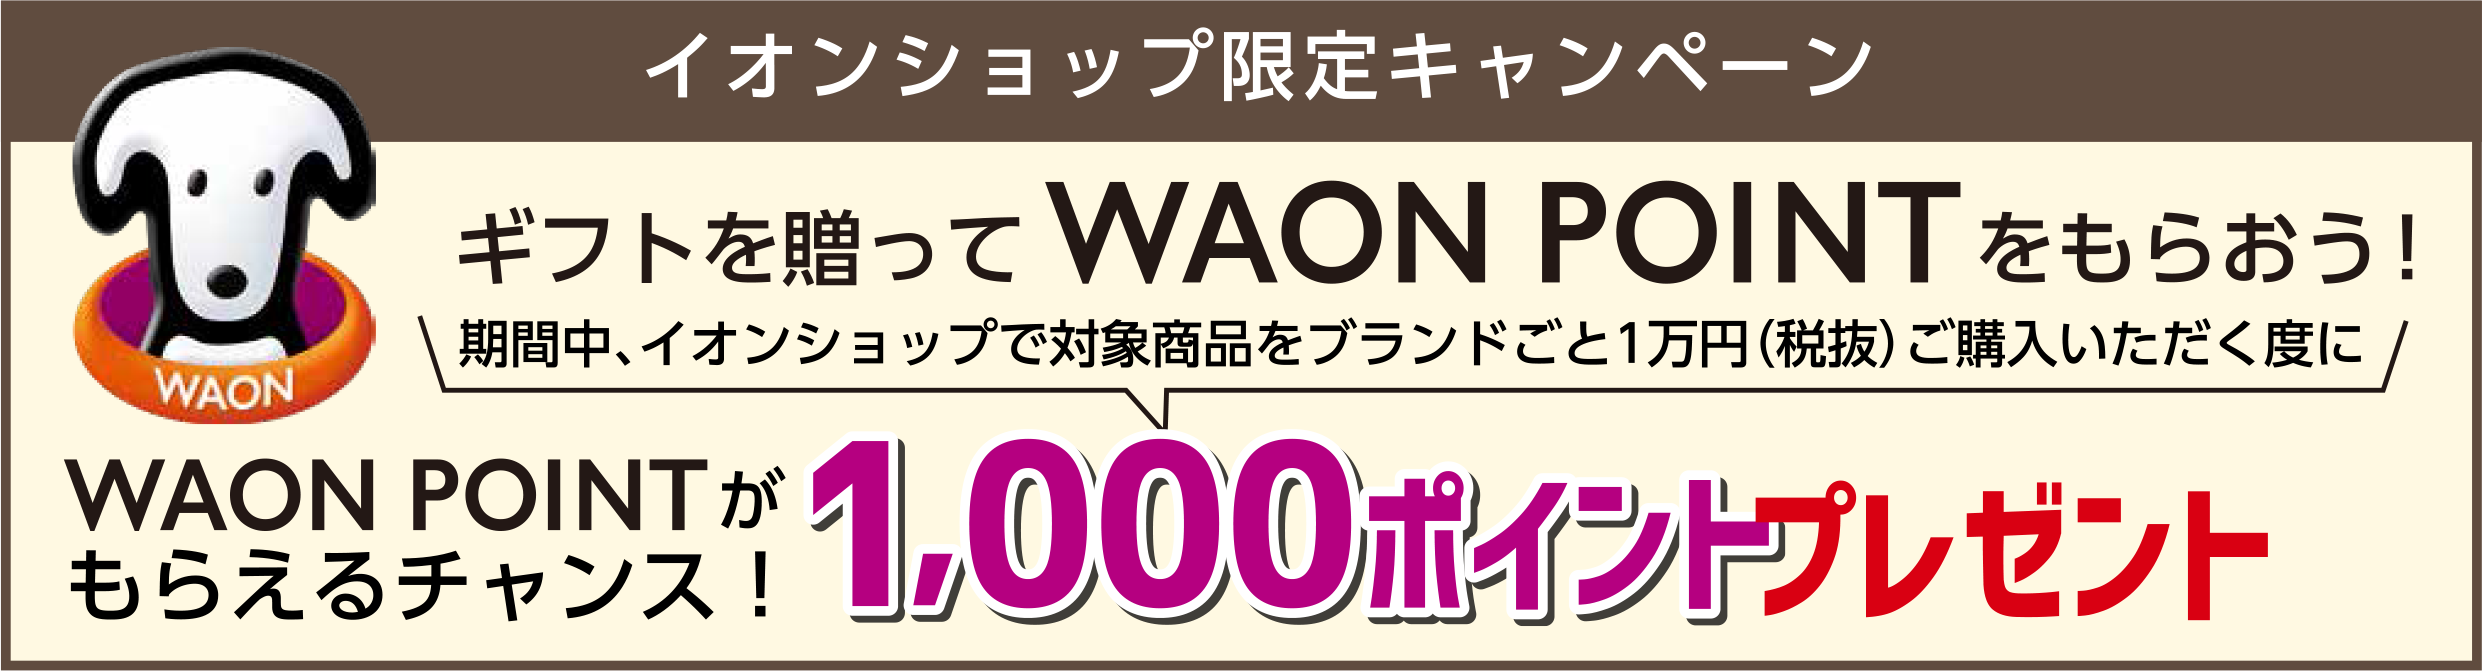 イオンショップ限定キャンペーンギフトを贈ってWAONPOINTをもらおう！
					期間中、イオンショップで対象商品をブランドごと１万円（税抜）ご購入いただく度に、WAONPOINTがもらえるチャンス！1,000ポイントプレゼント